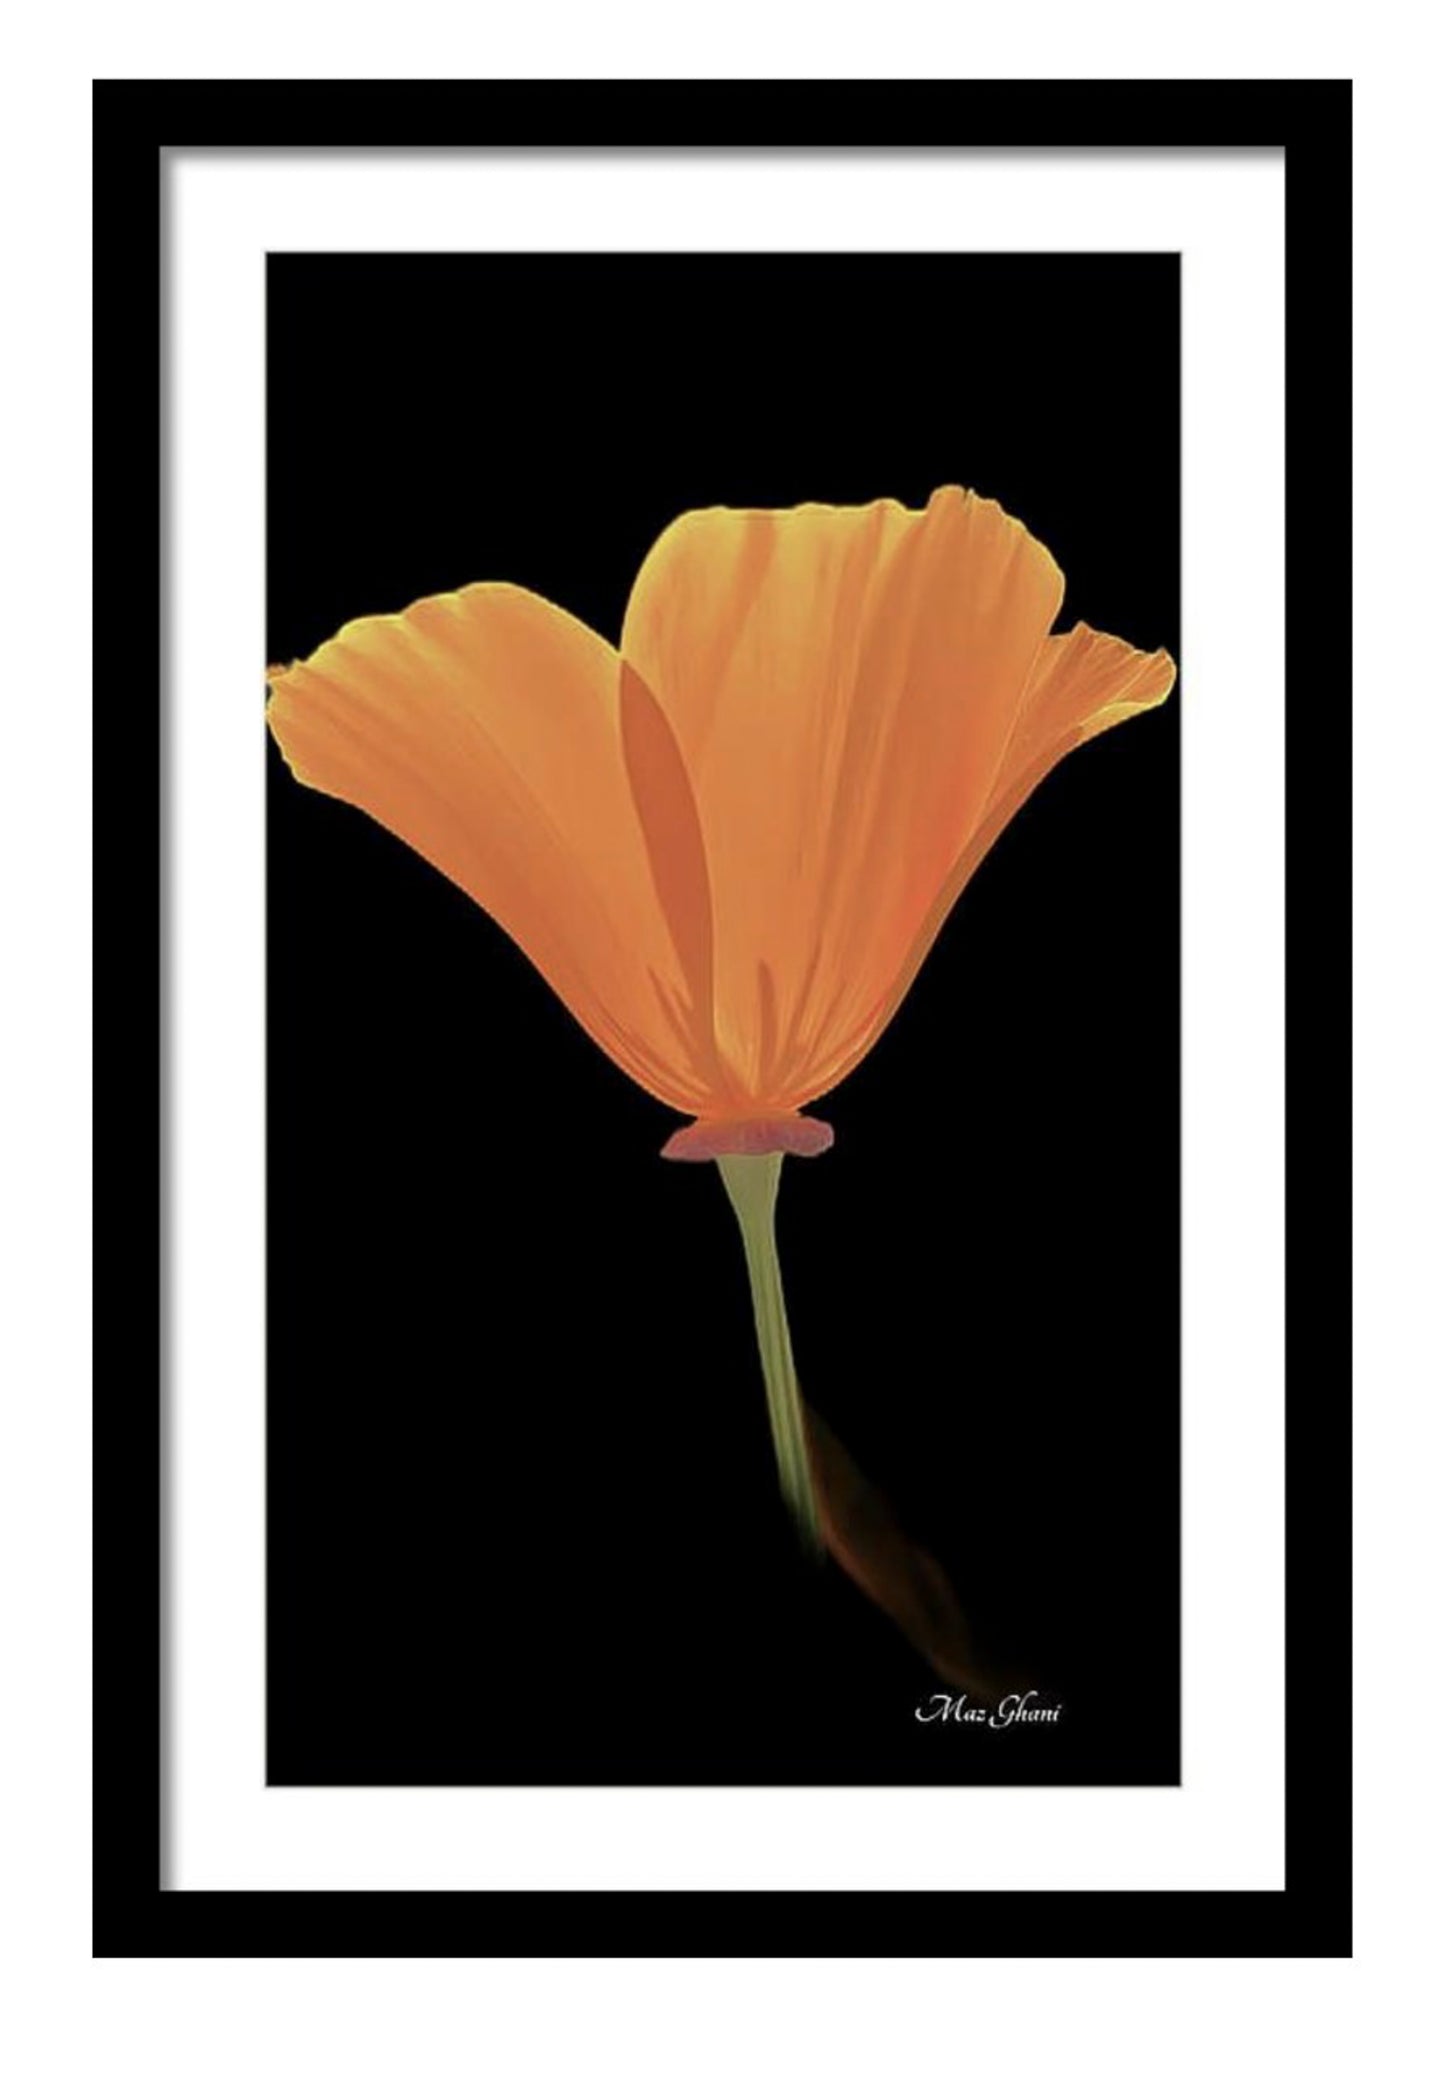 poppy, orange, poppy, california poppy, art print, colorful art, flower photo, floral art, botanical art, maz ghani, framed print